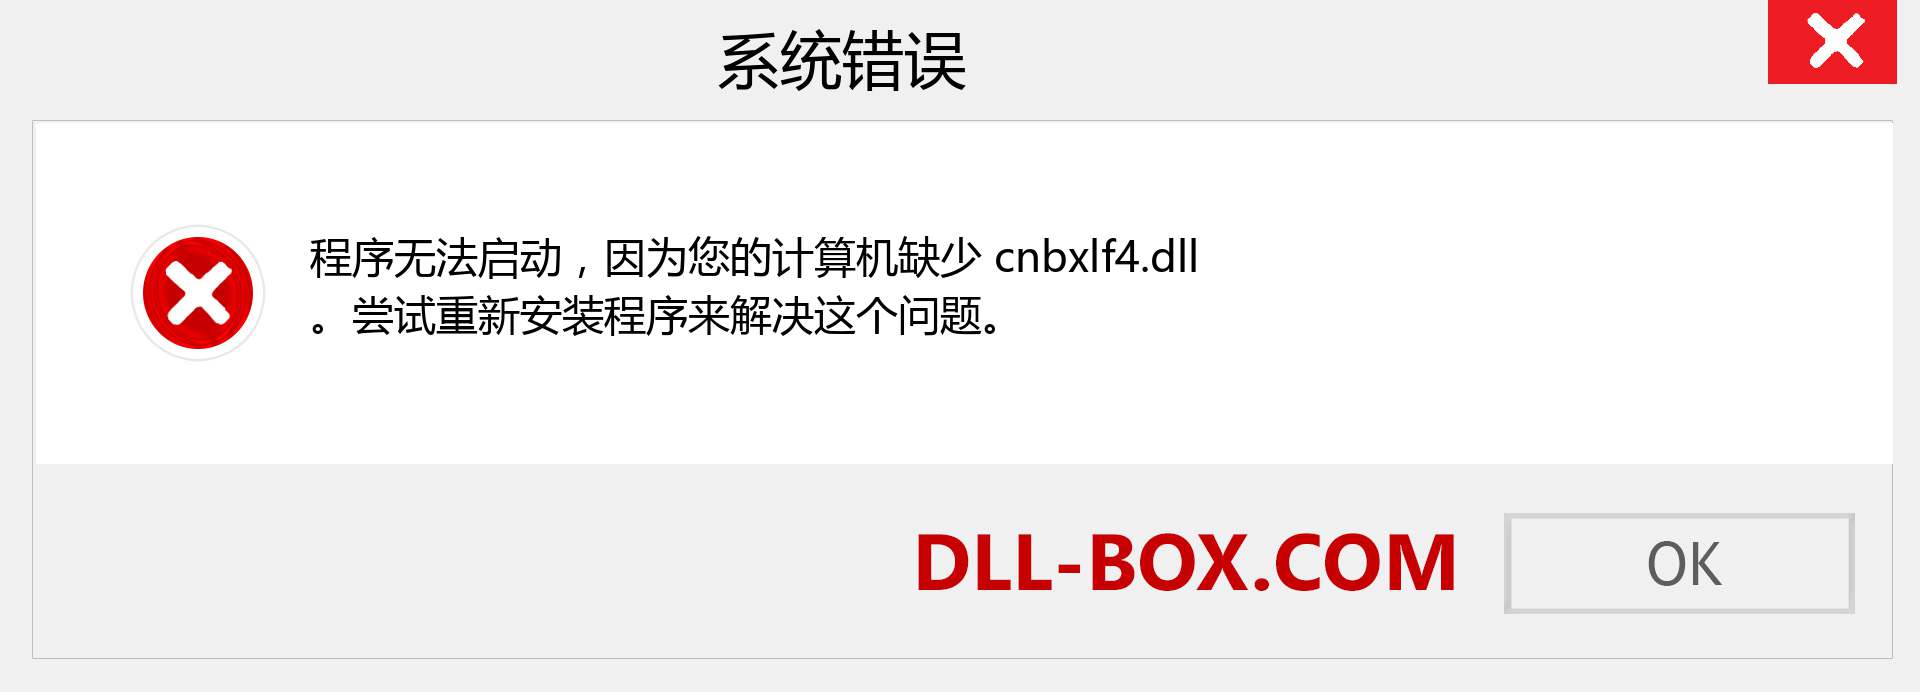 cnbxlf4.dll 文件丢失？。 适用于 Windows 7、8、10 的下载 - 修复 Windows、照片、图像上的 cnbxlf4 dll 丢失错误